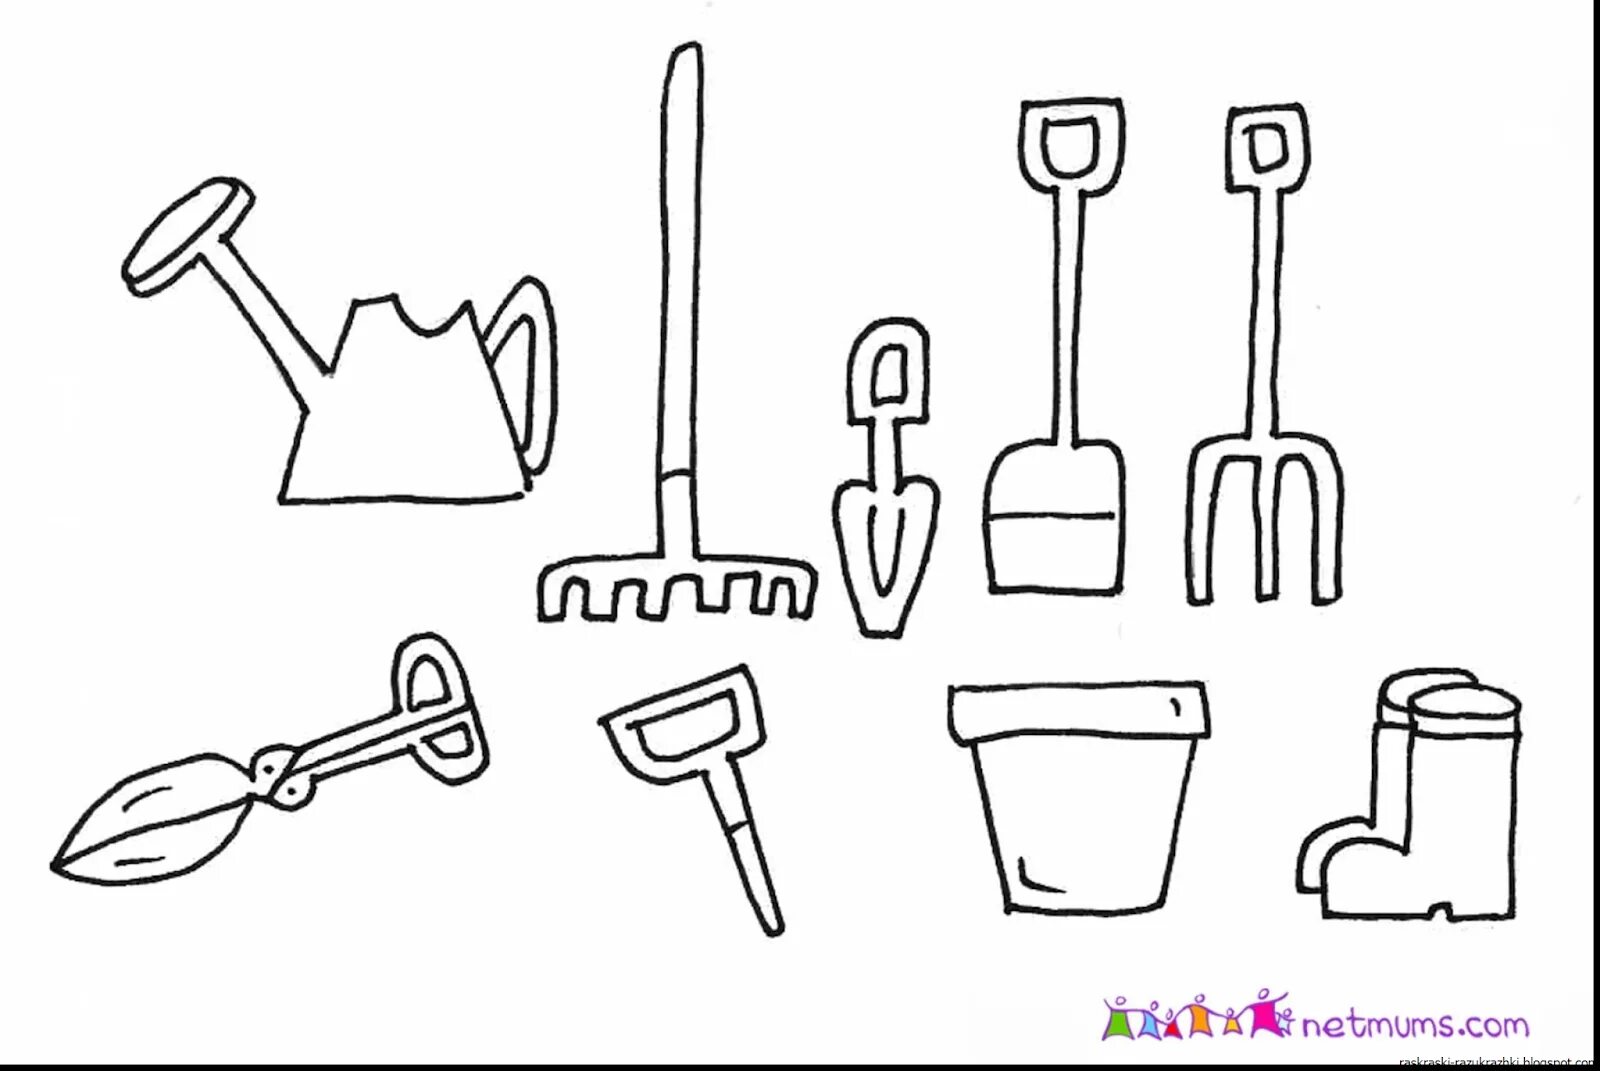 Tools tools #6